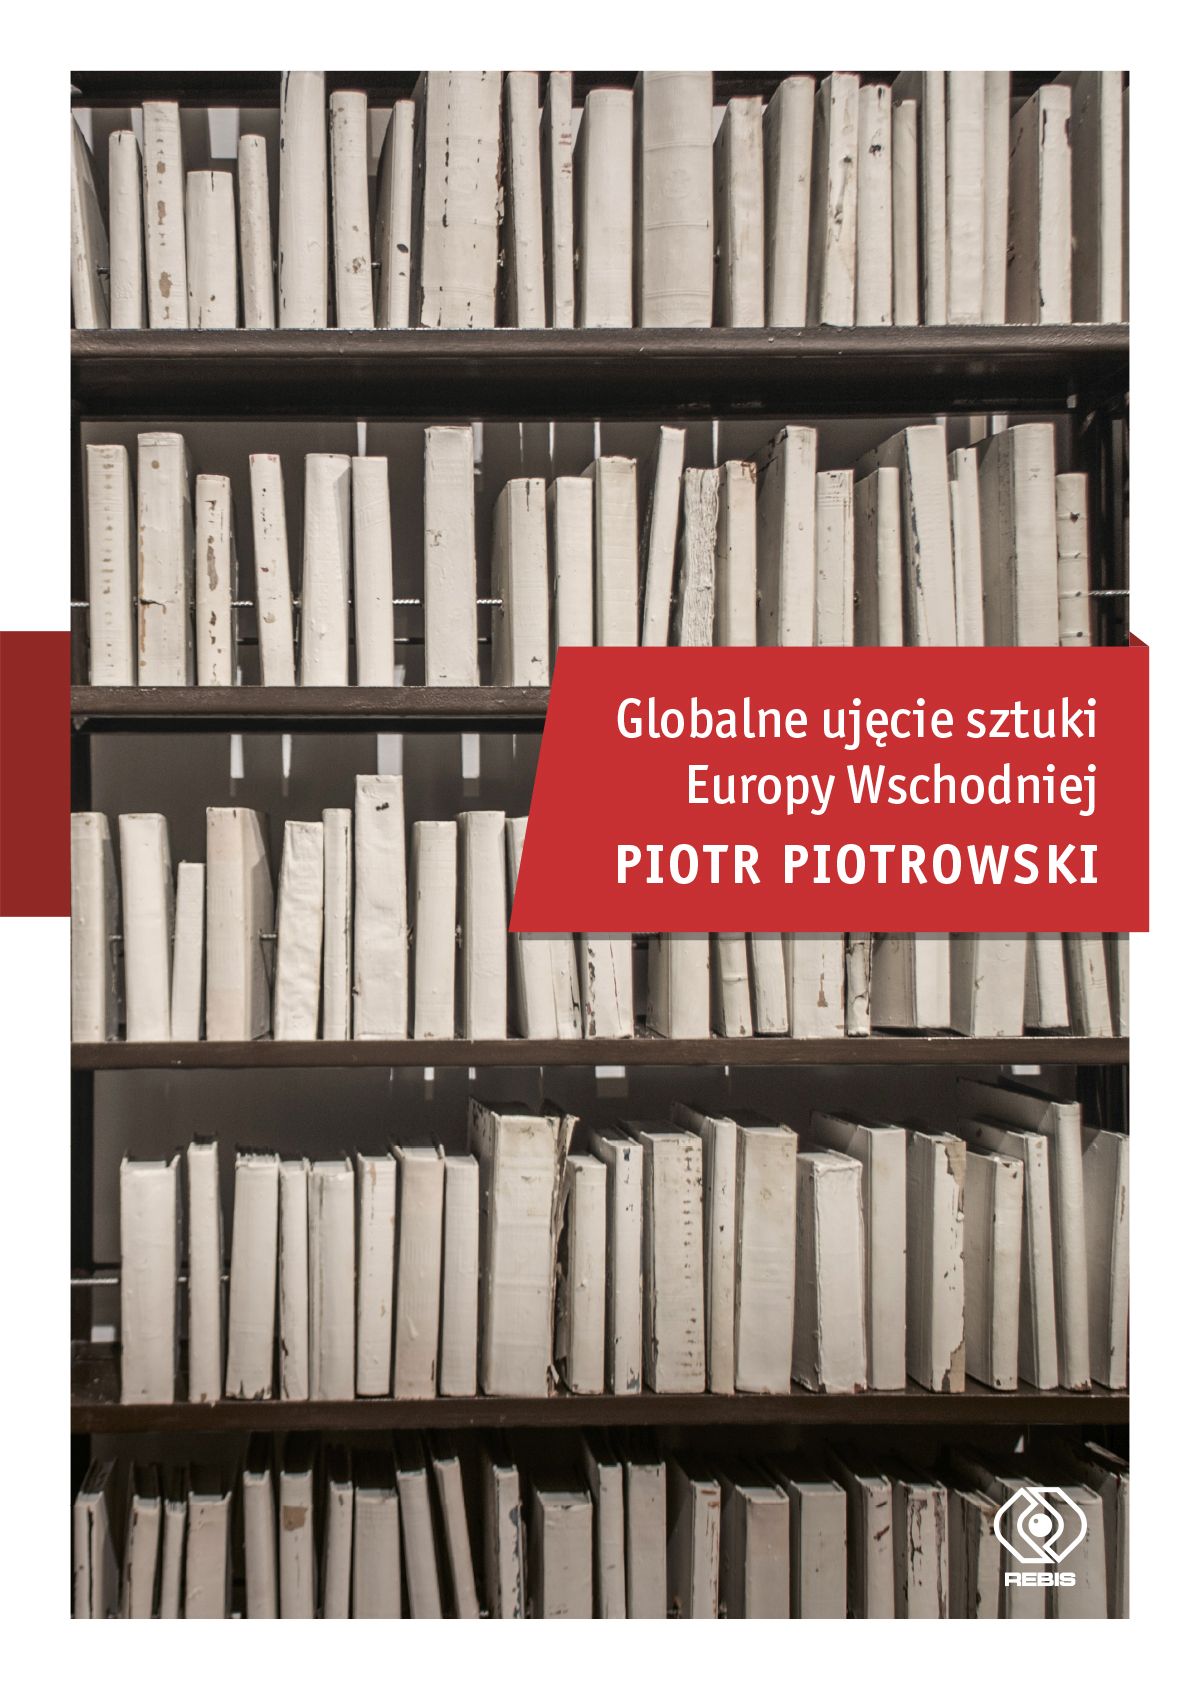 "Globalne ujęcie sztuki Europy Wschodniej", prof. Piotr Piotrowski